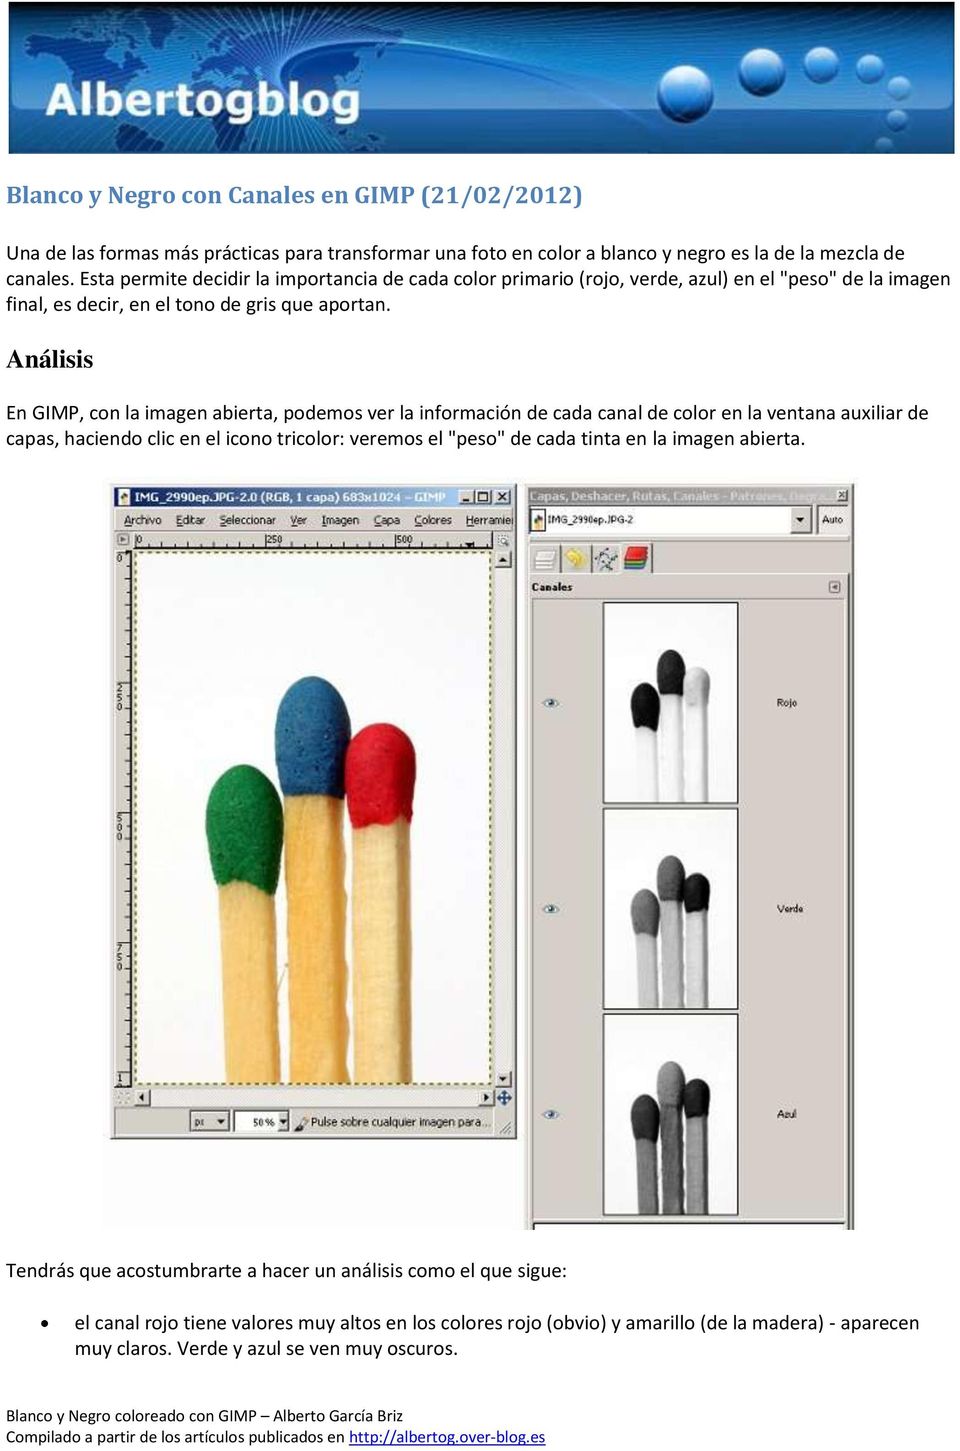 Análisis En GIMP, con la imagen abierta, podemos ver la información de cada canal de color en la ventana auxiliar de capas, haciendo clic en el icono tricolor: veremos el "peso" de cada